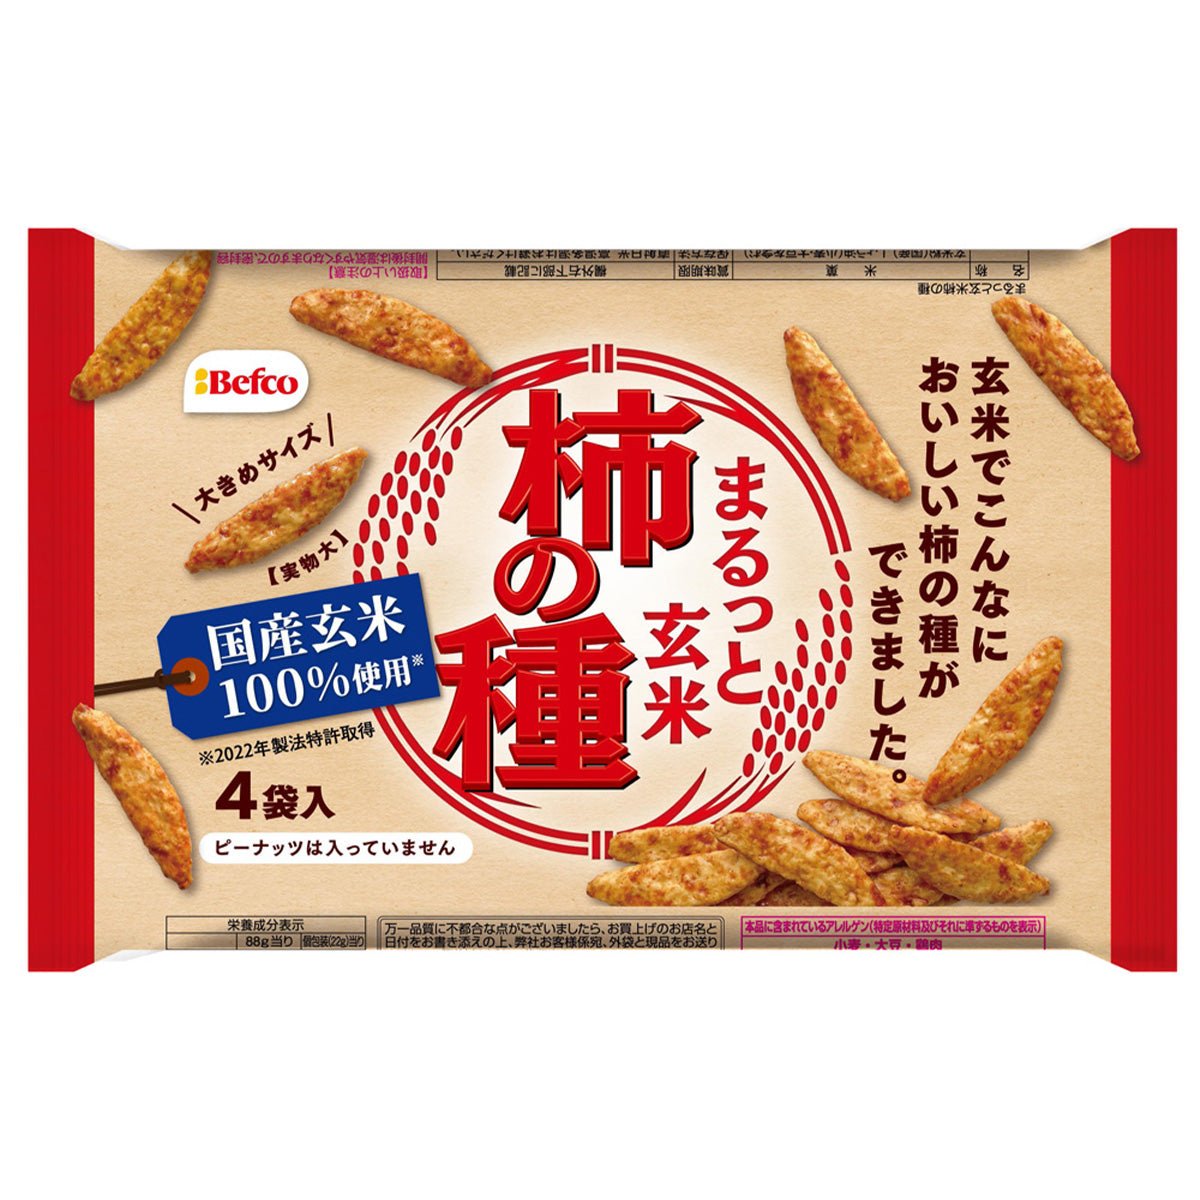 Befco KakinoTane Brown Rice - Tokyo Fresh Direct